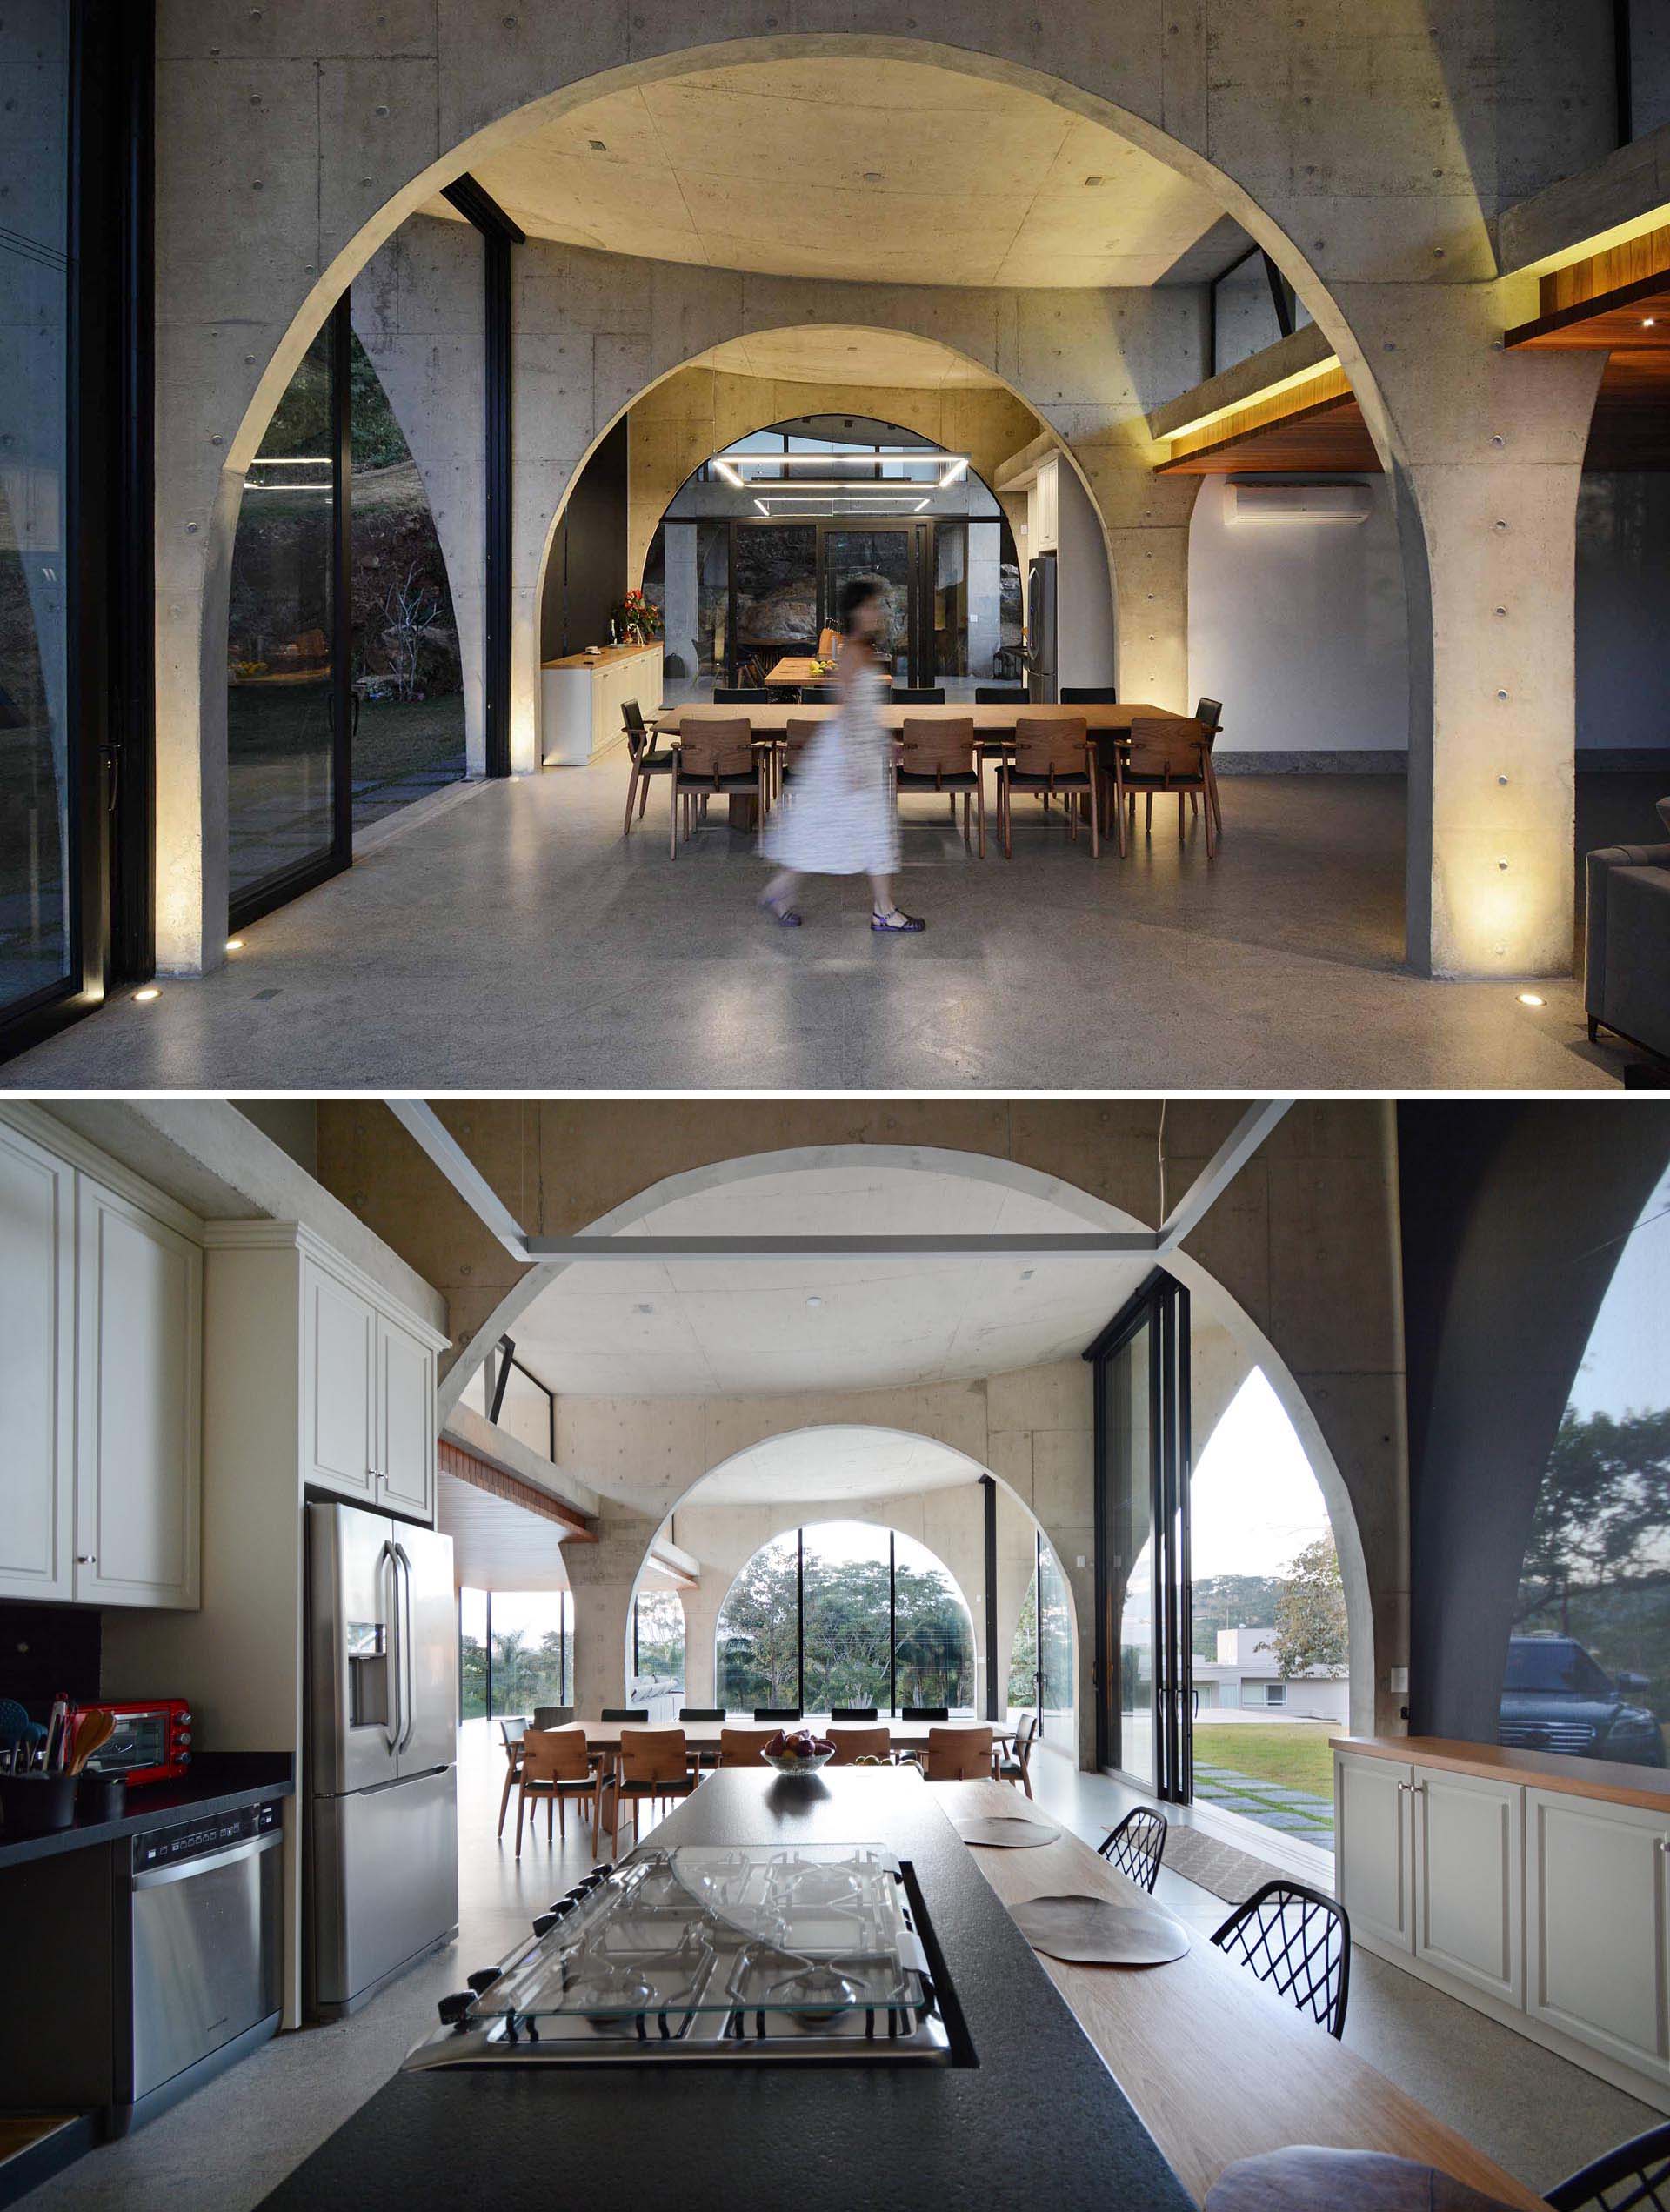 Бетонные арки - ключ к созданию ощущения пространства и высоты во всем этом современном доме.